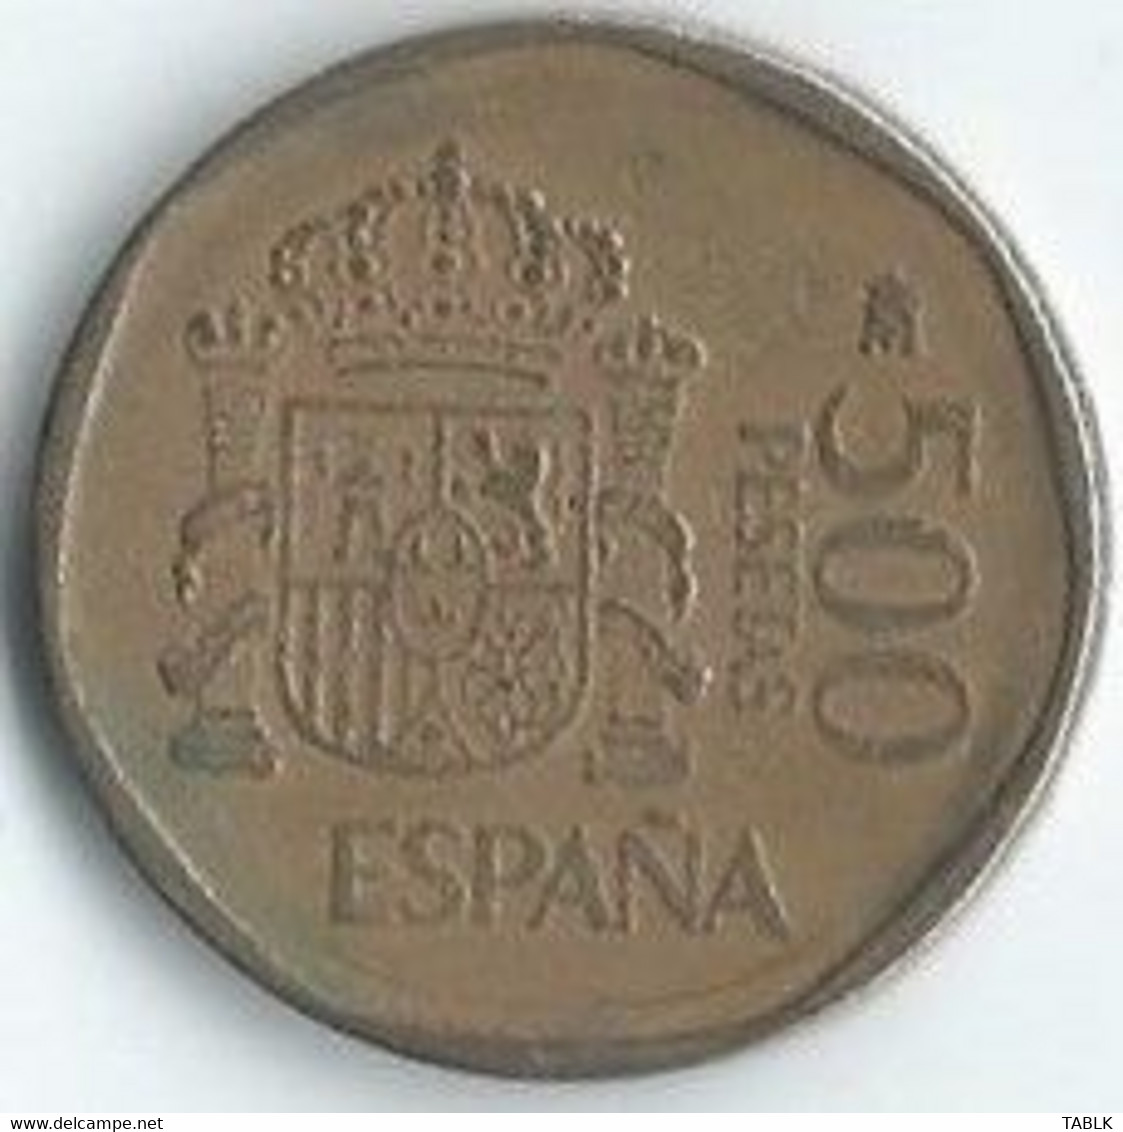 MM098 - SPANJE - SPAIN - 500 PESETA 1987 - 500 Pesetas